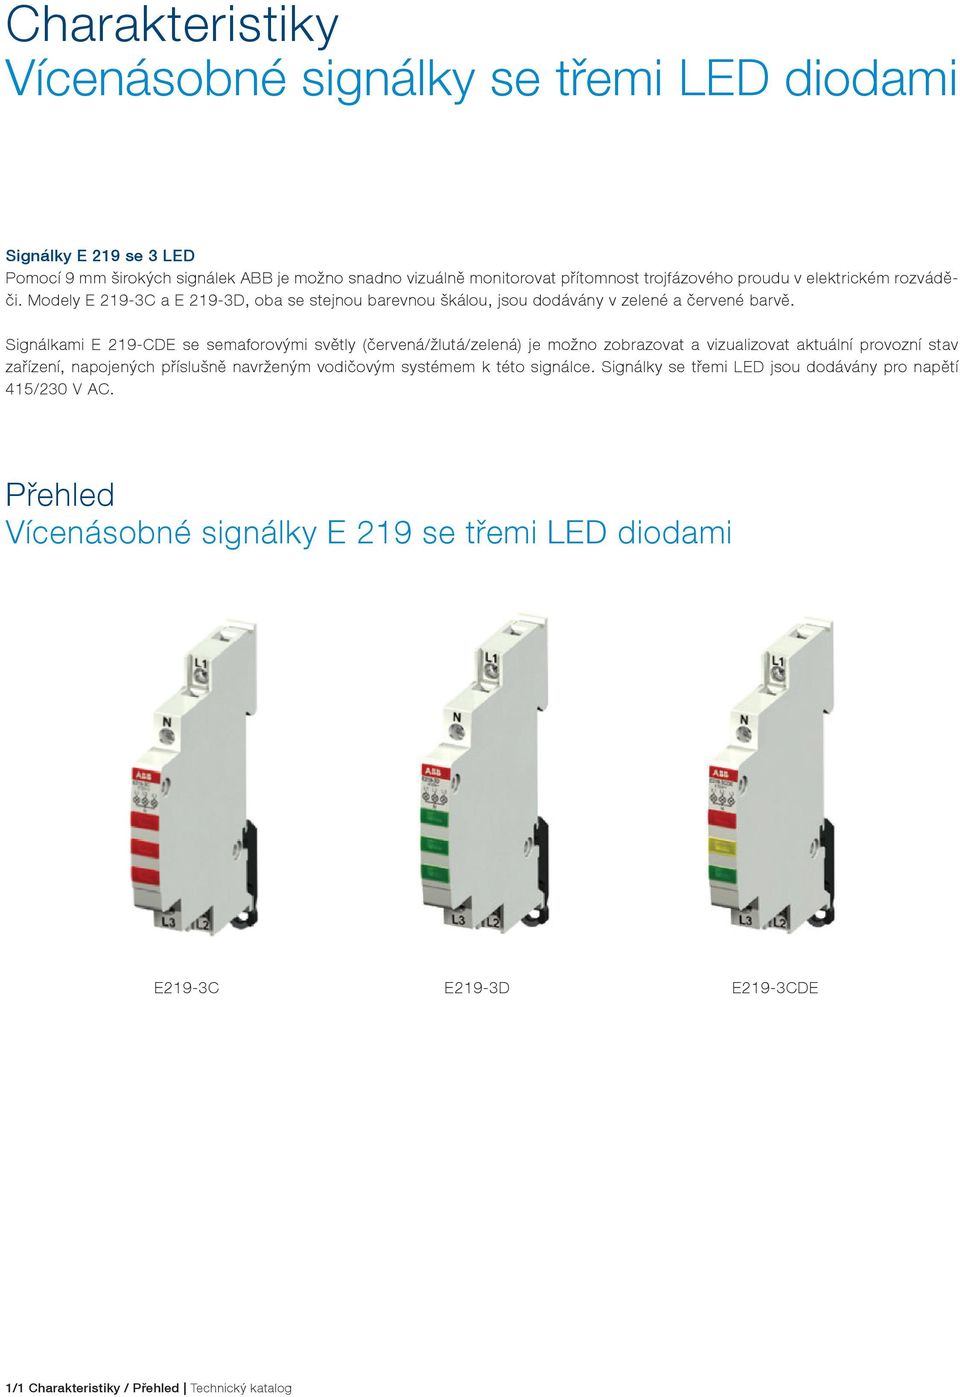 Signálkami E 219-CDE se semaforovými světly (červená/žlutá/zelená) je možno zobrazovat a vizualizovat aktuální provozní stav zařízení, napojených příslušně navrženým vodičovým